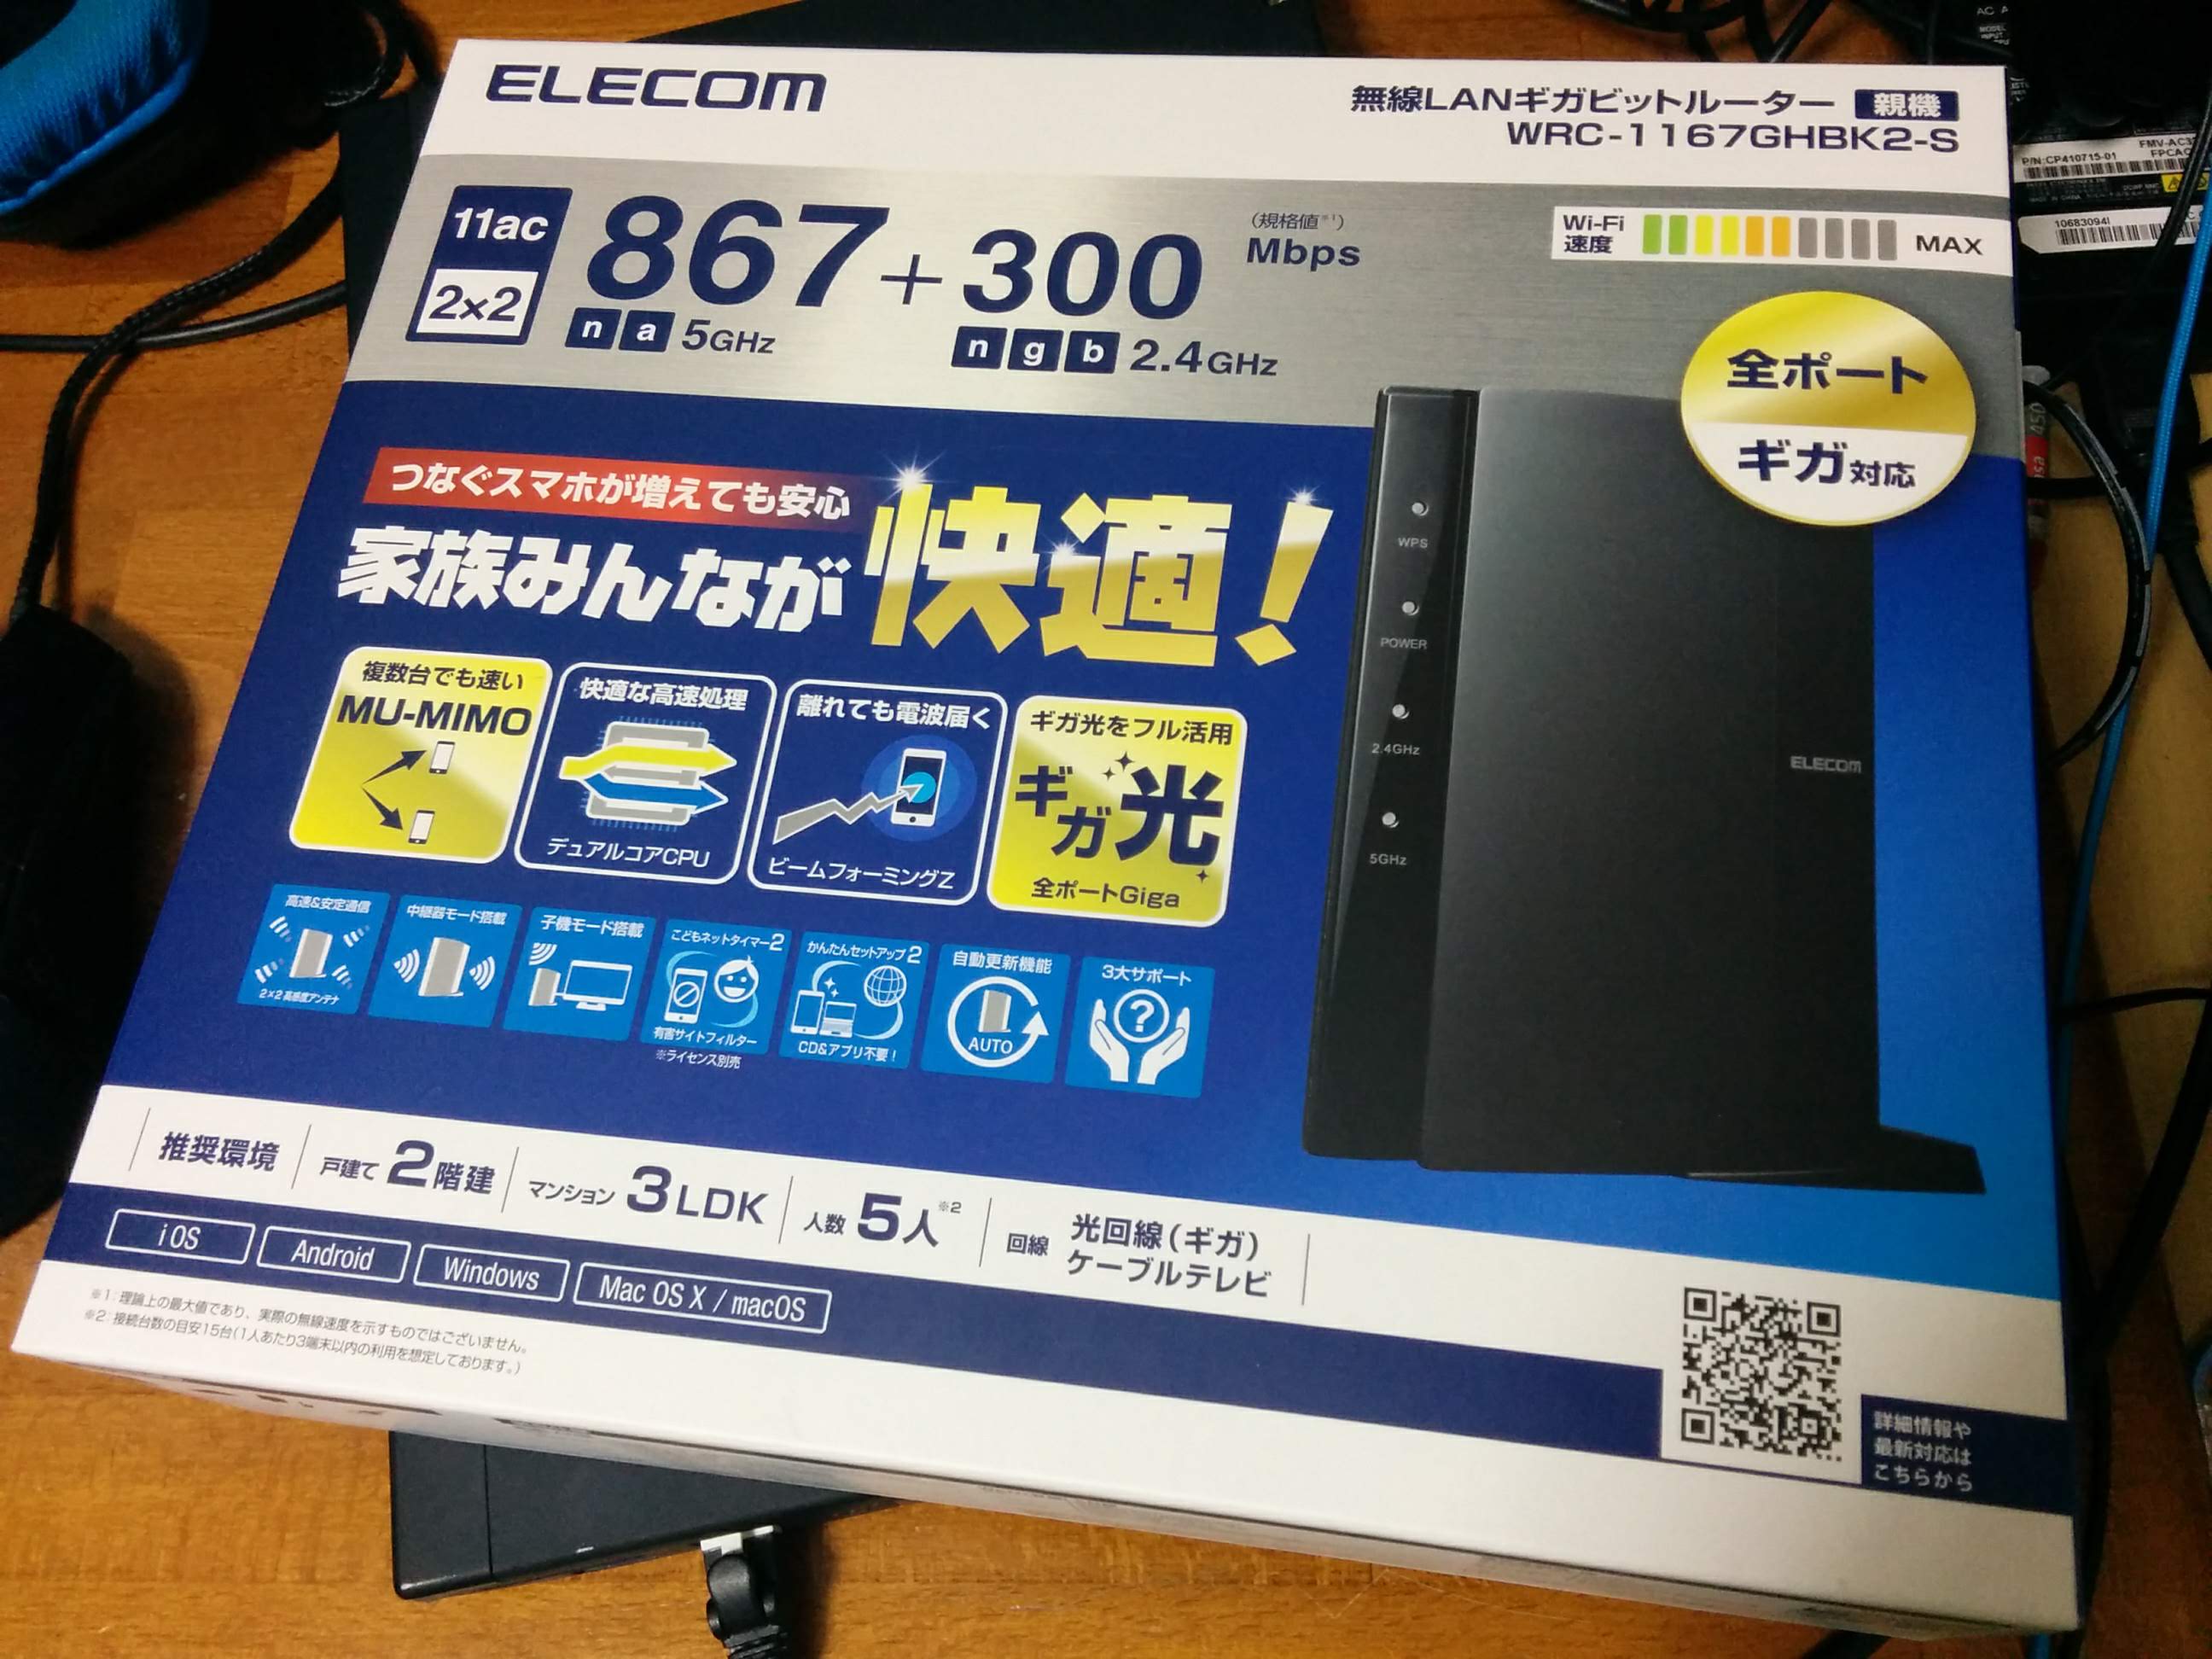 Elecom Wrc 1167ghbk2 S 鉄pcブログ